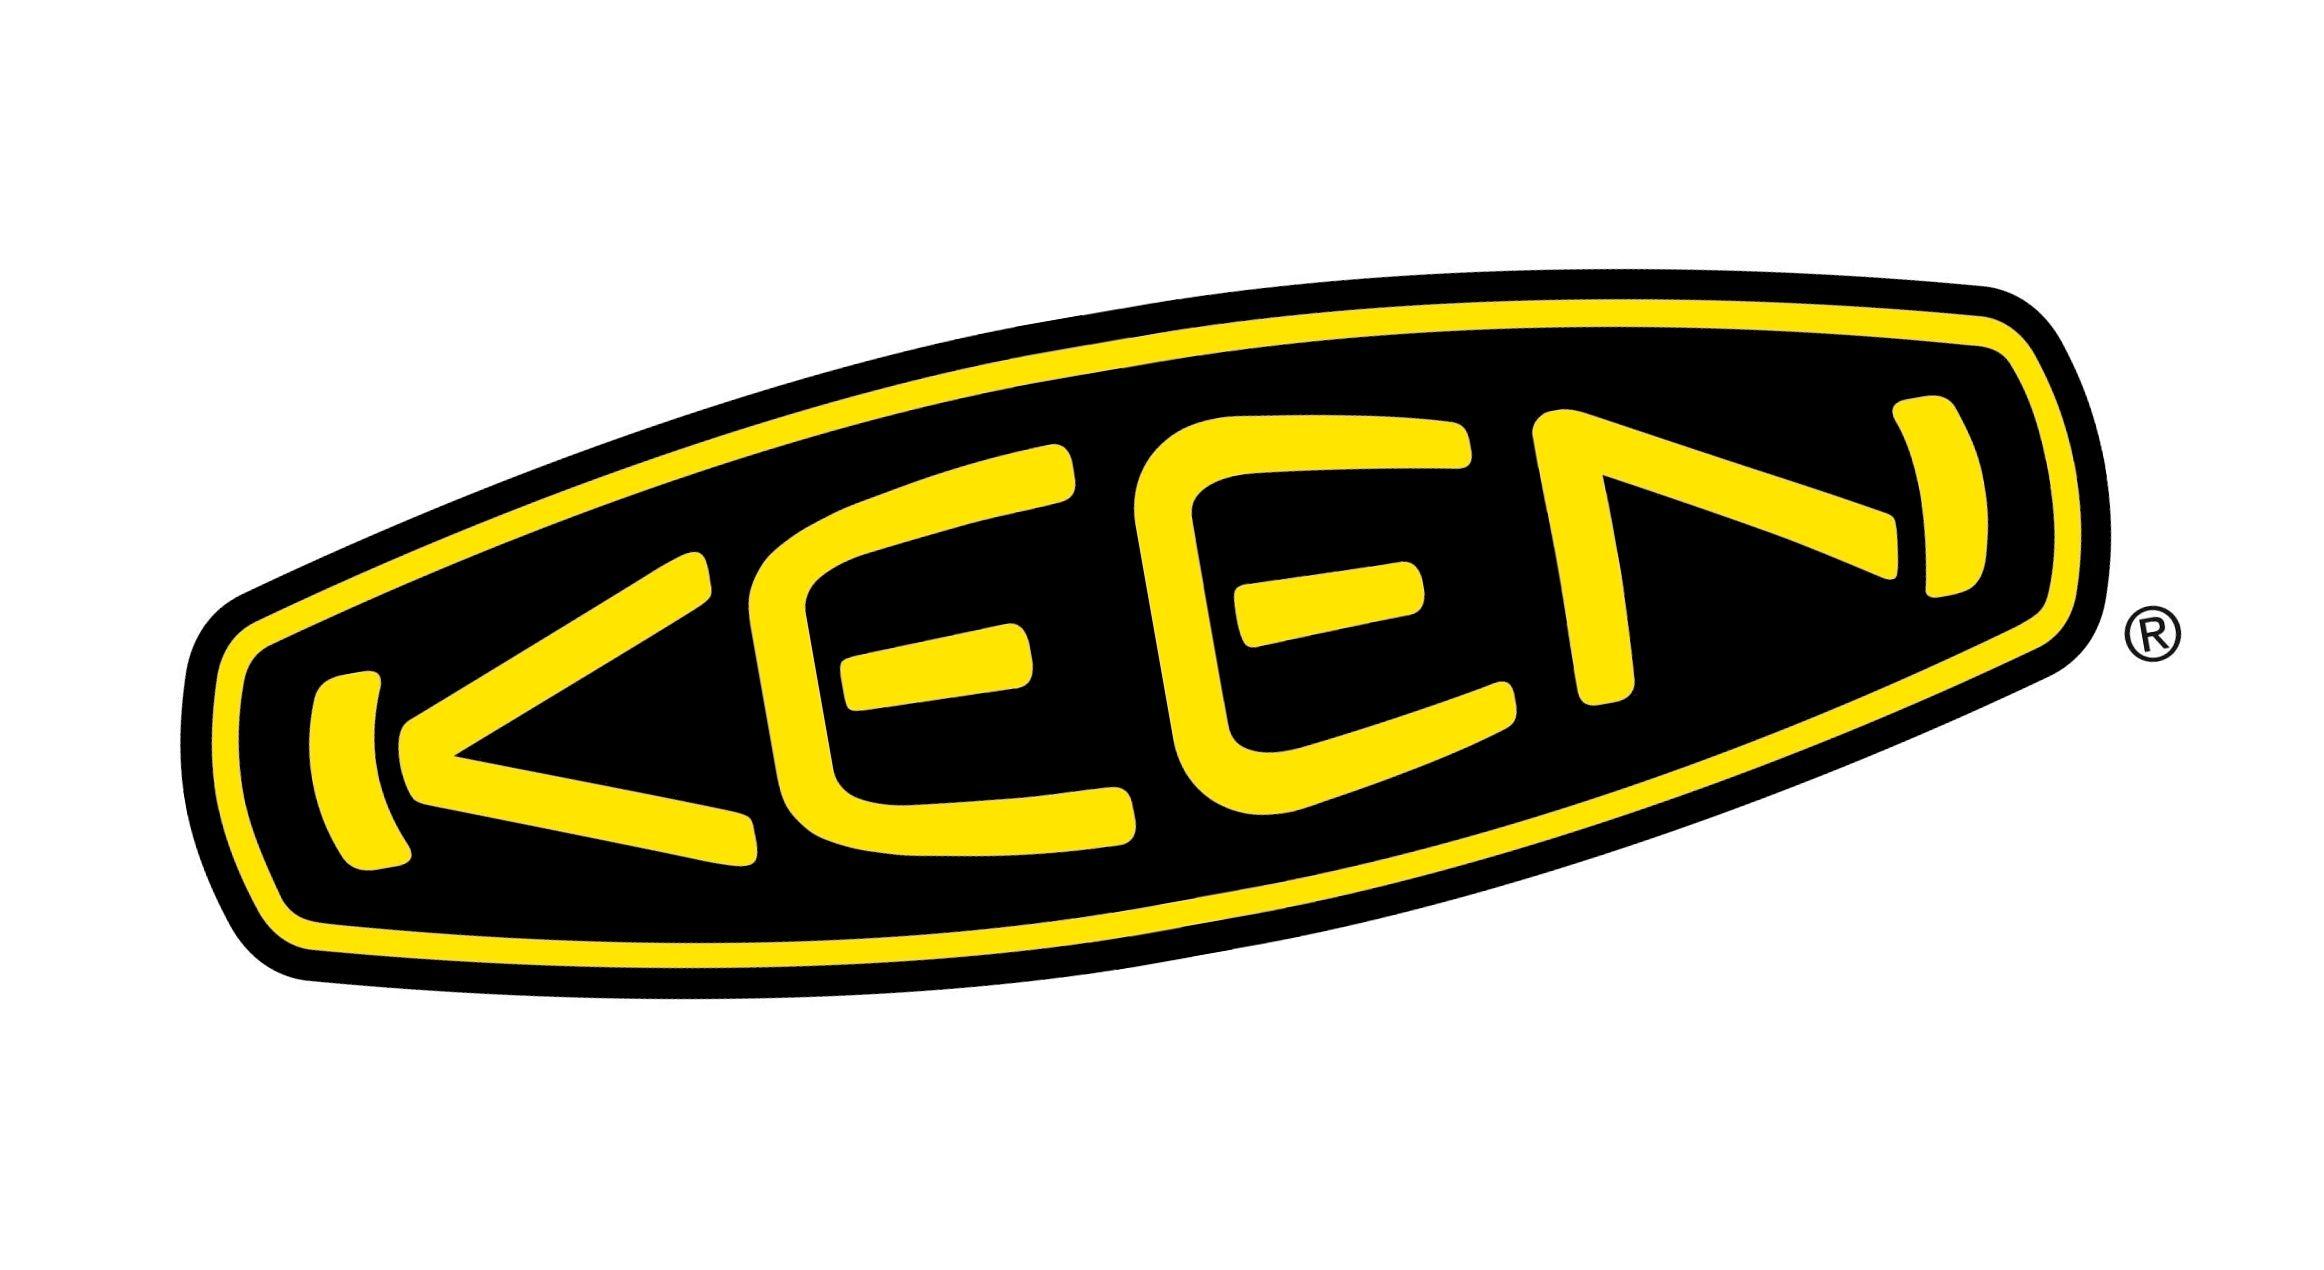 Keen.com Logo - Keen – Logos Download